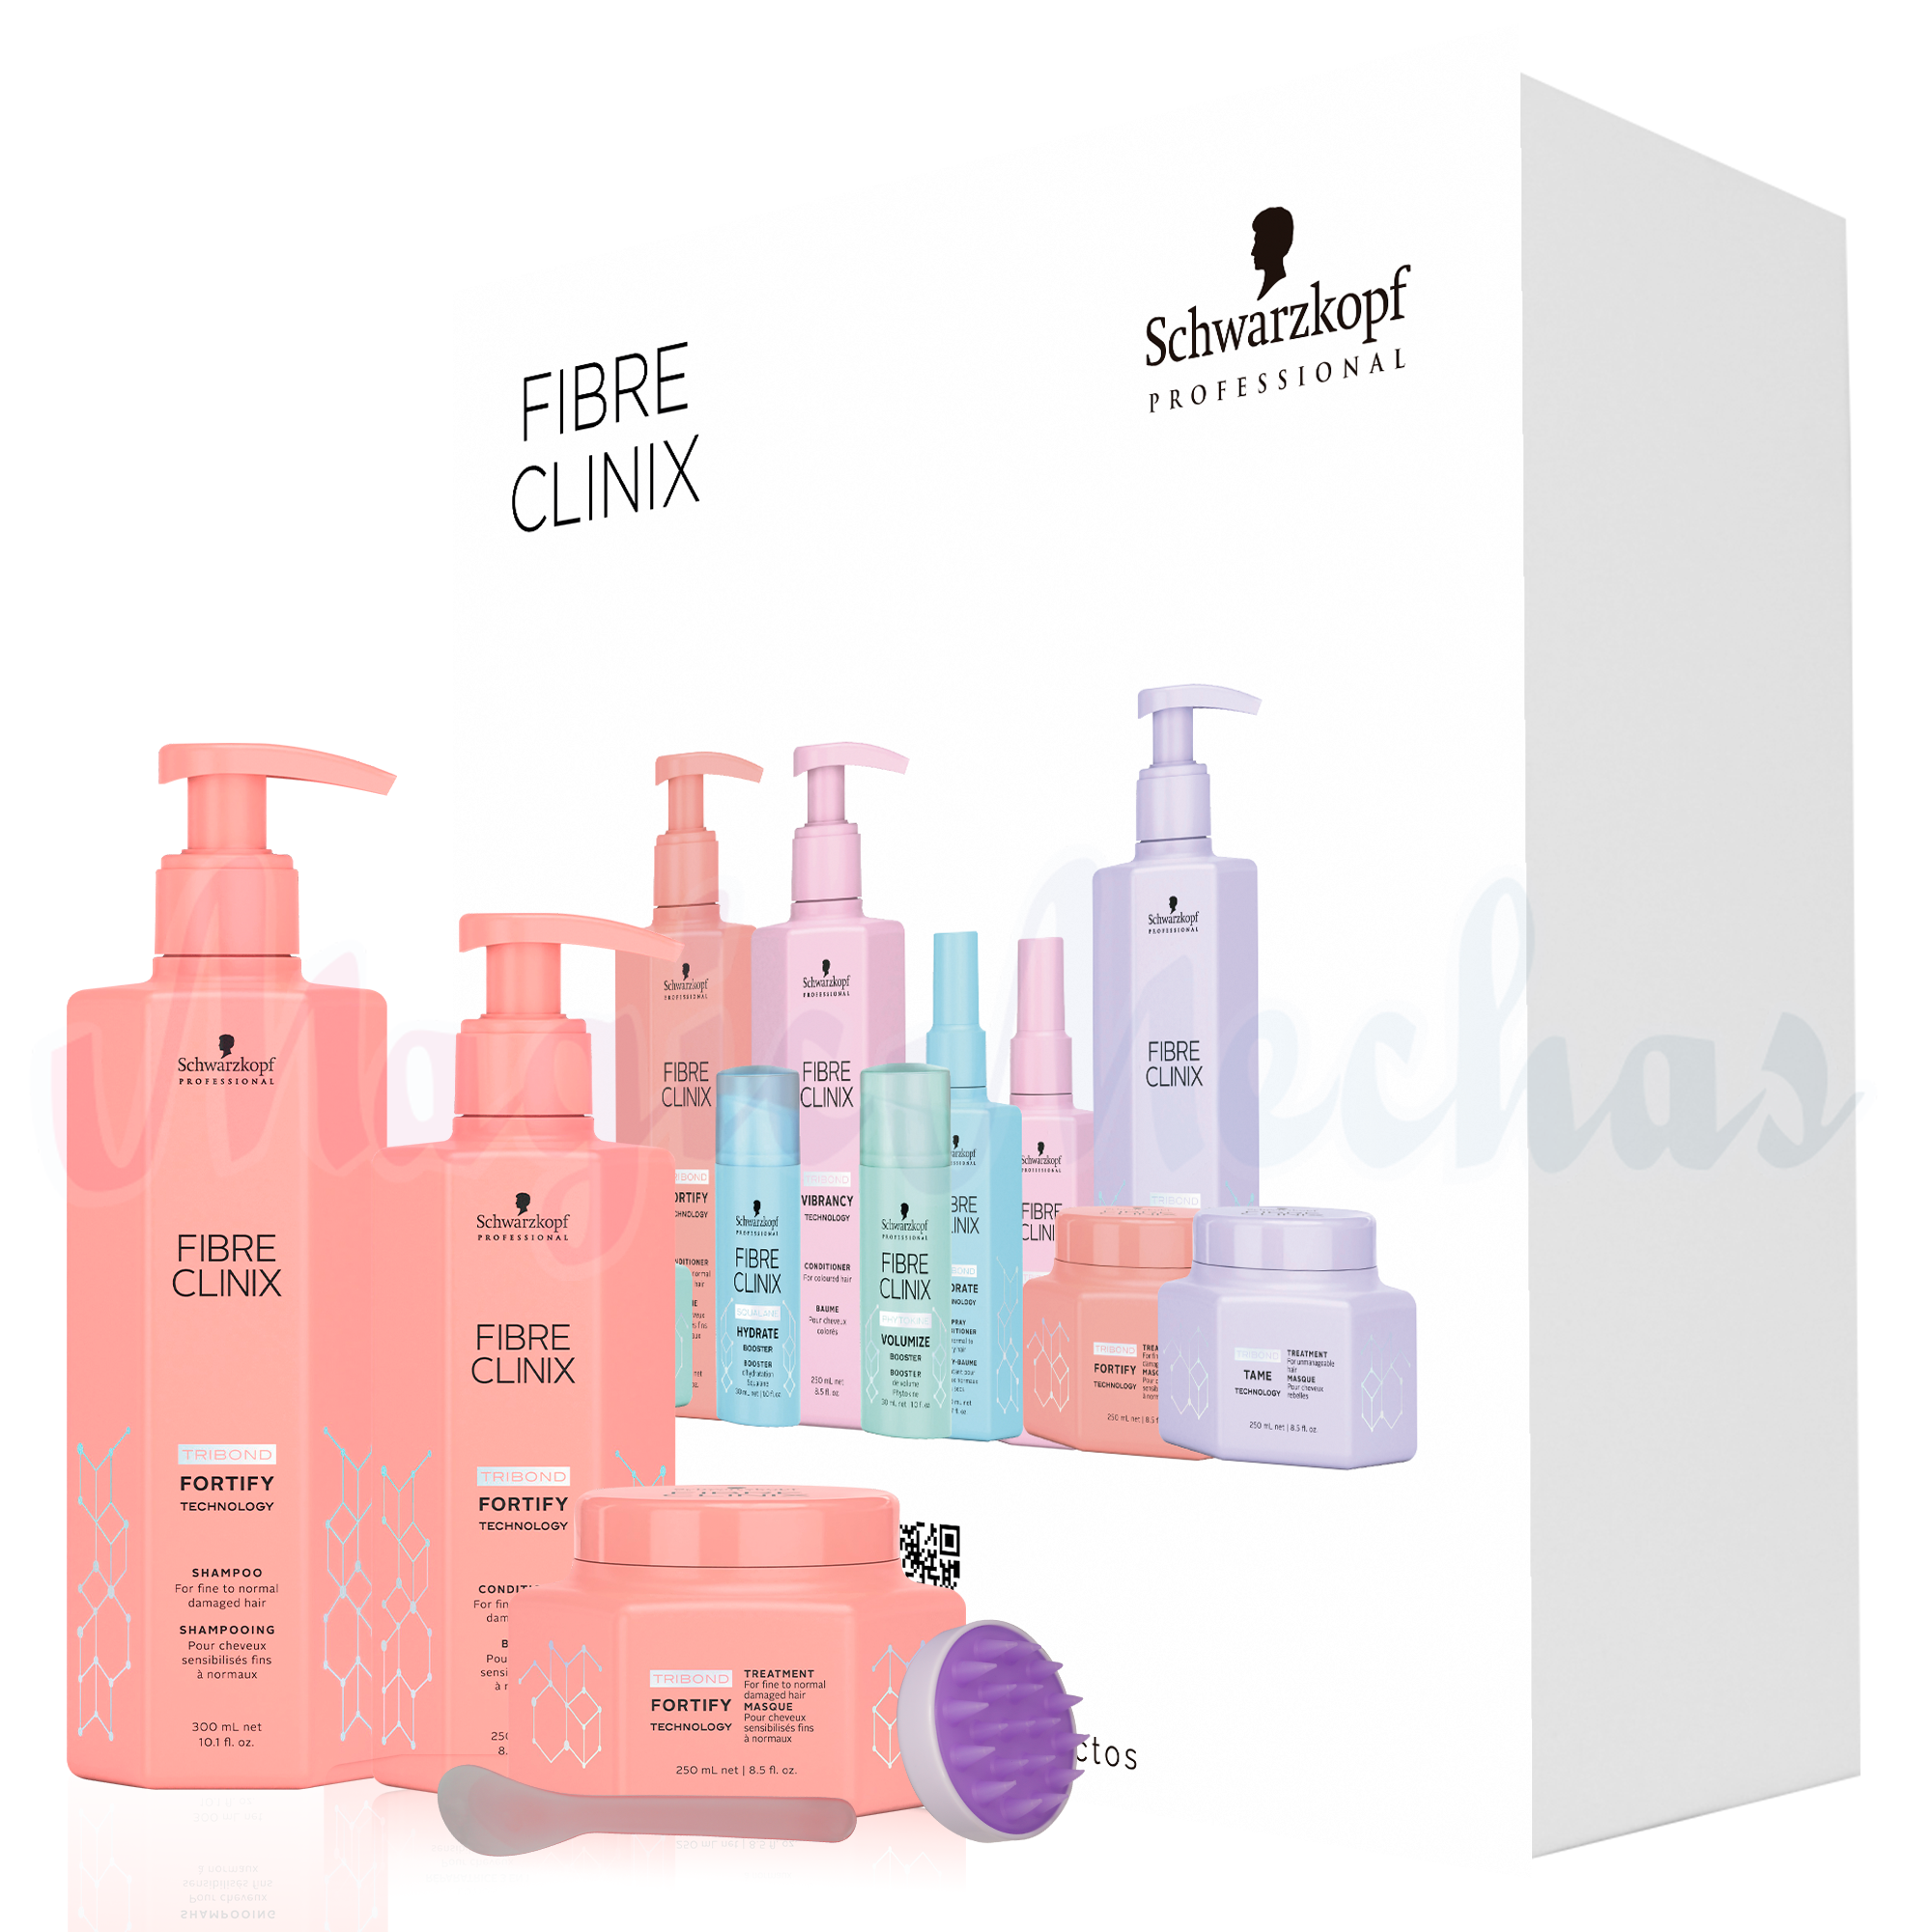 Kit Fibre Clinix Fortify Shampoo + Acondicionador + Tratamiento Fortificante Schwarzkopf Professional